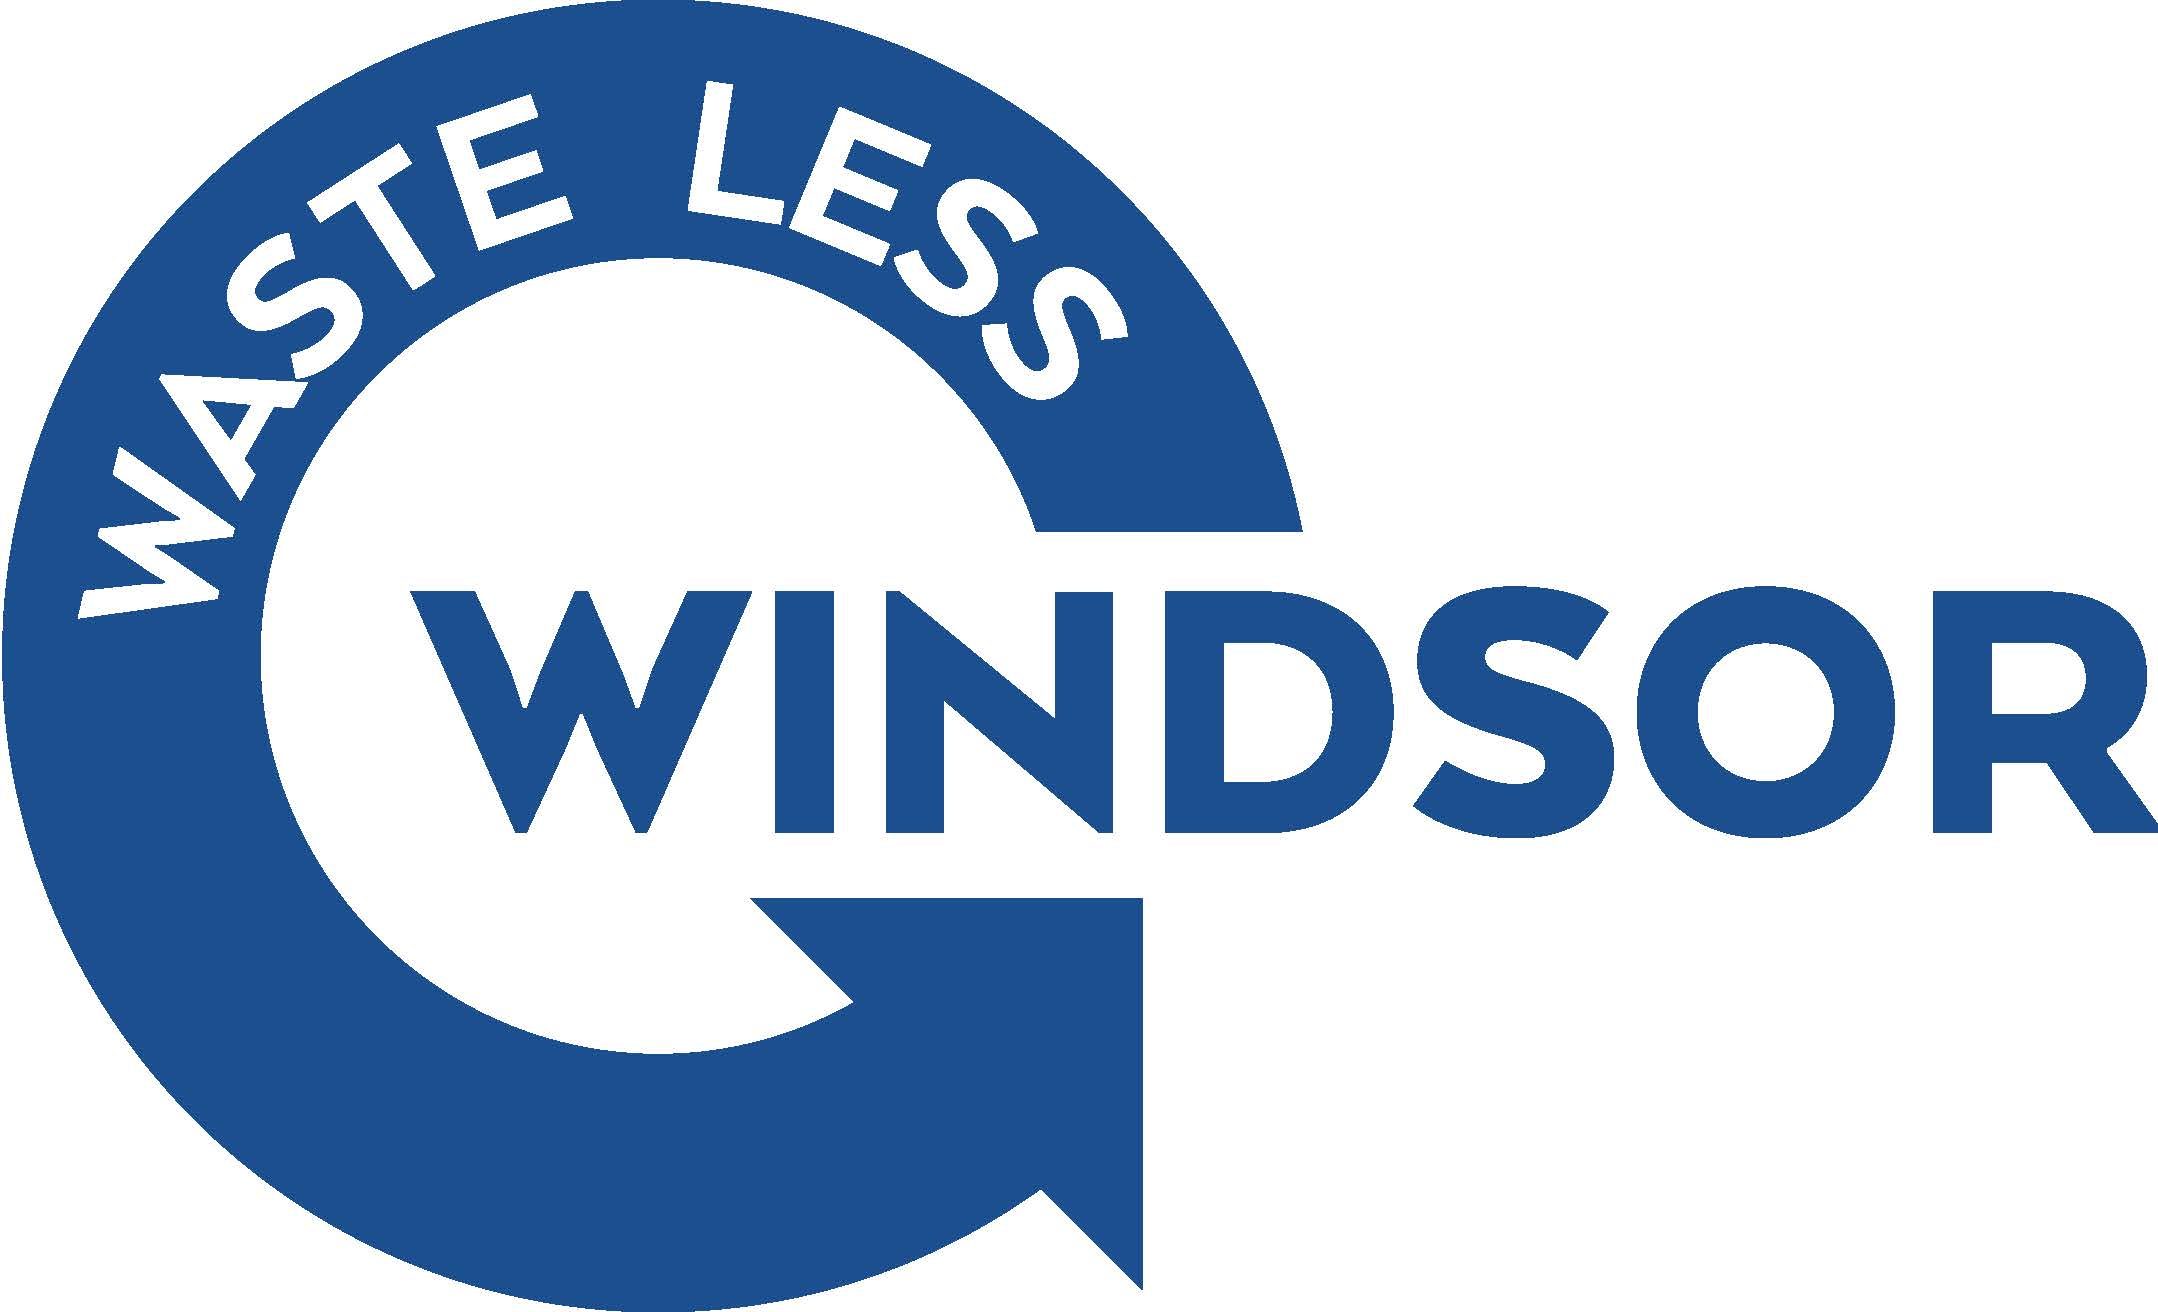 Waste Less Windsor